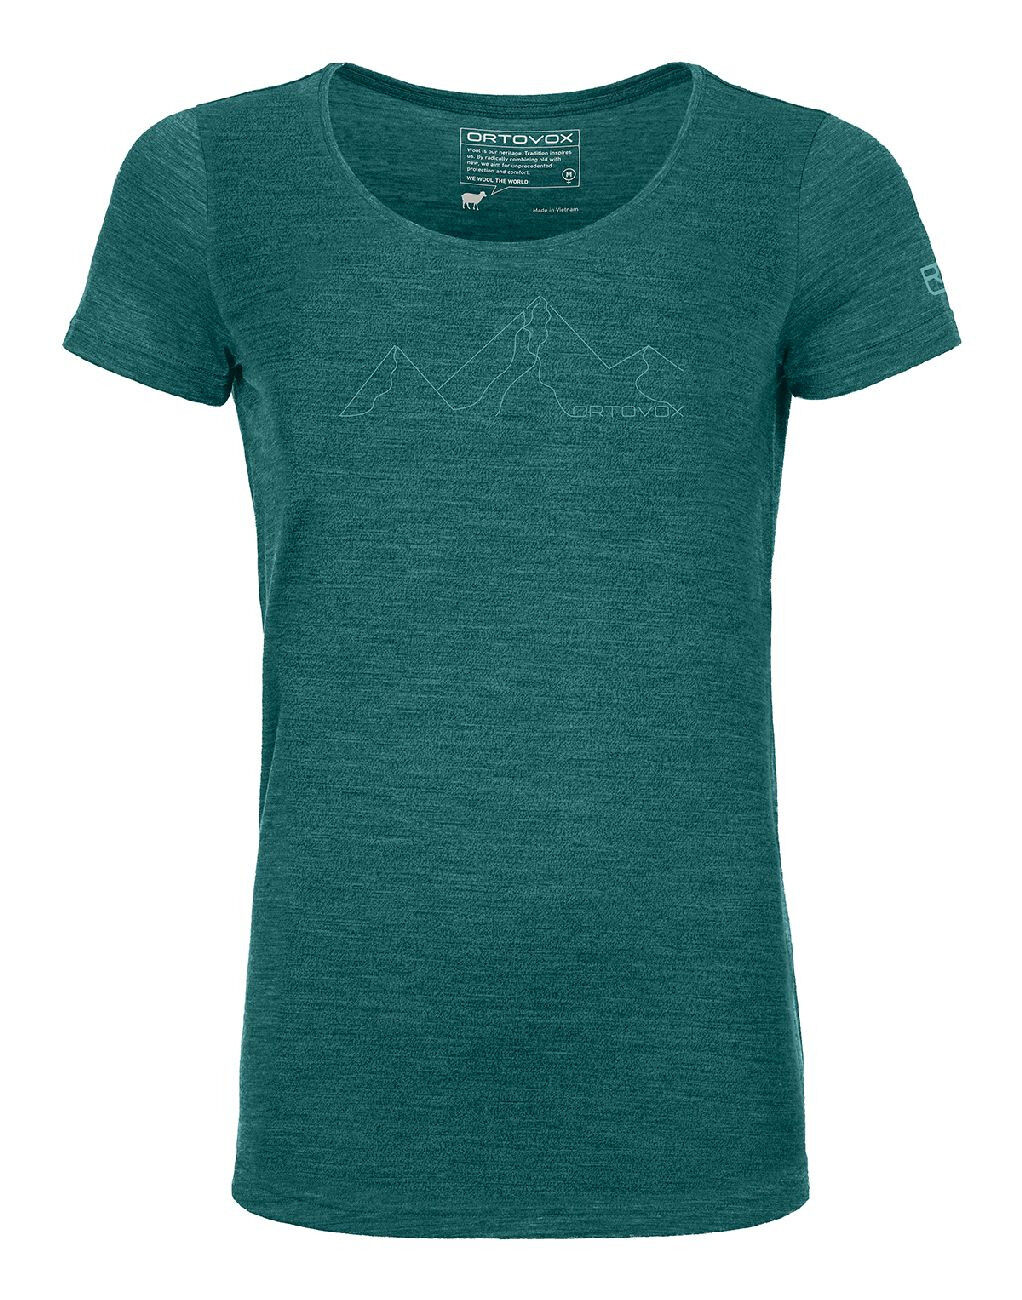 Ortovox 150 Cool Mountain Face TS - T-shirt - Women's